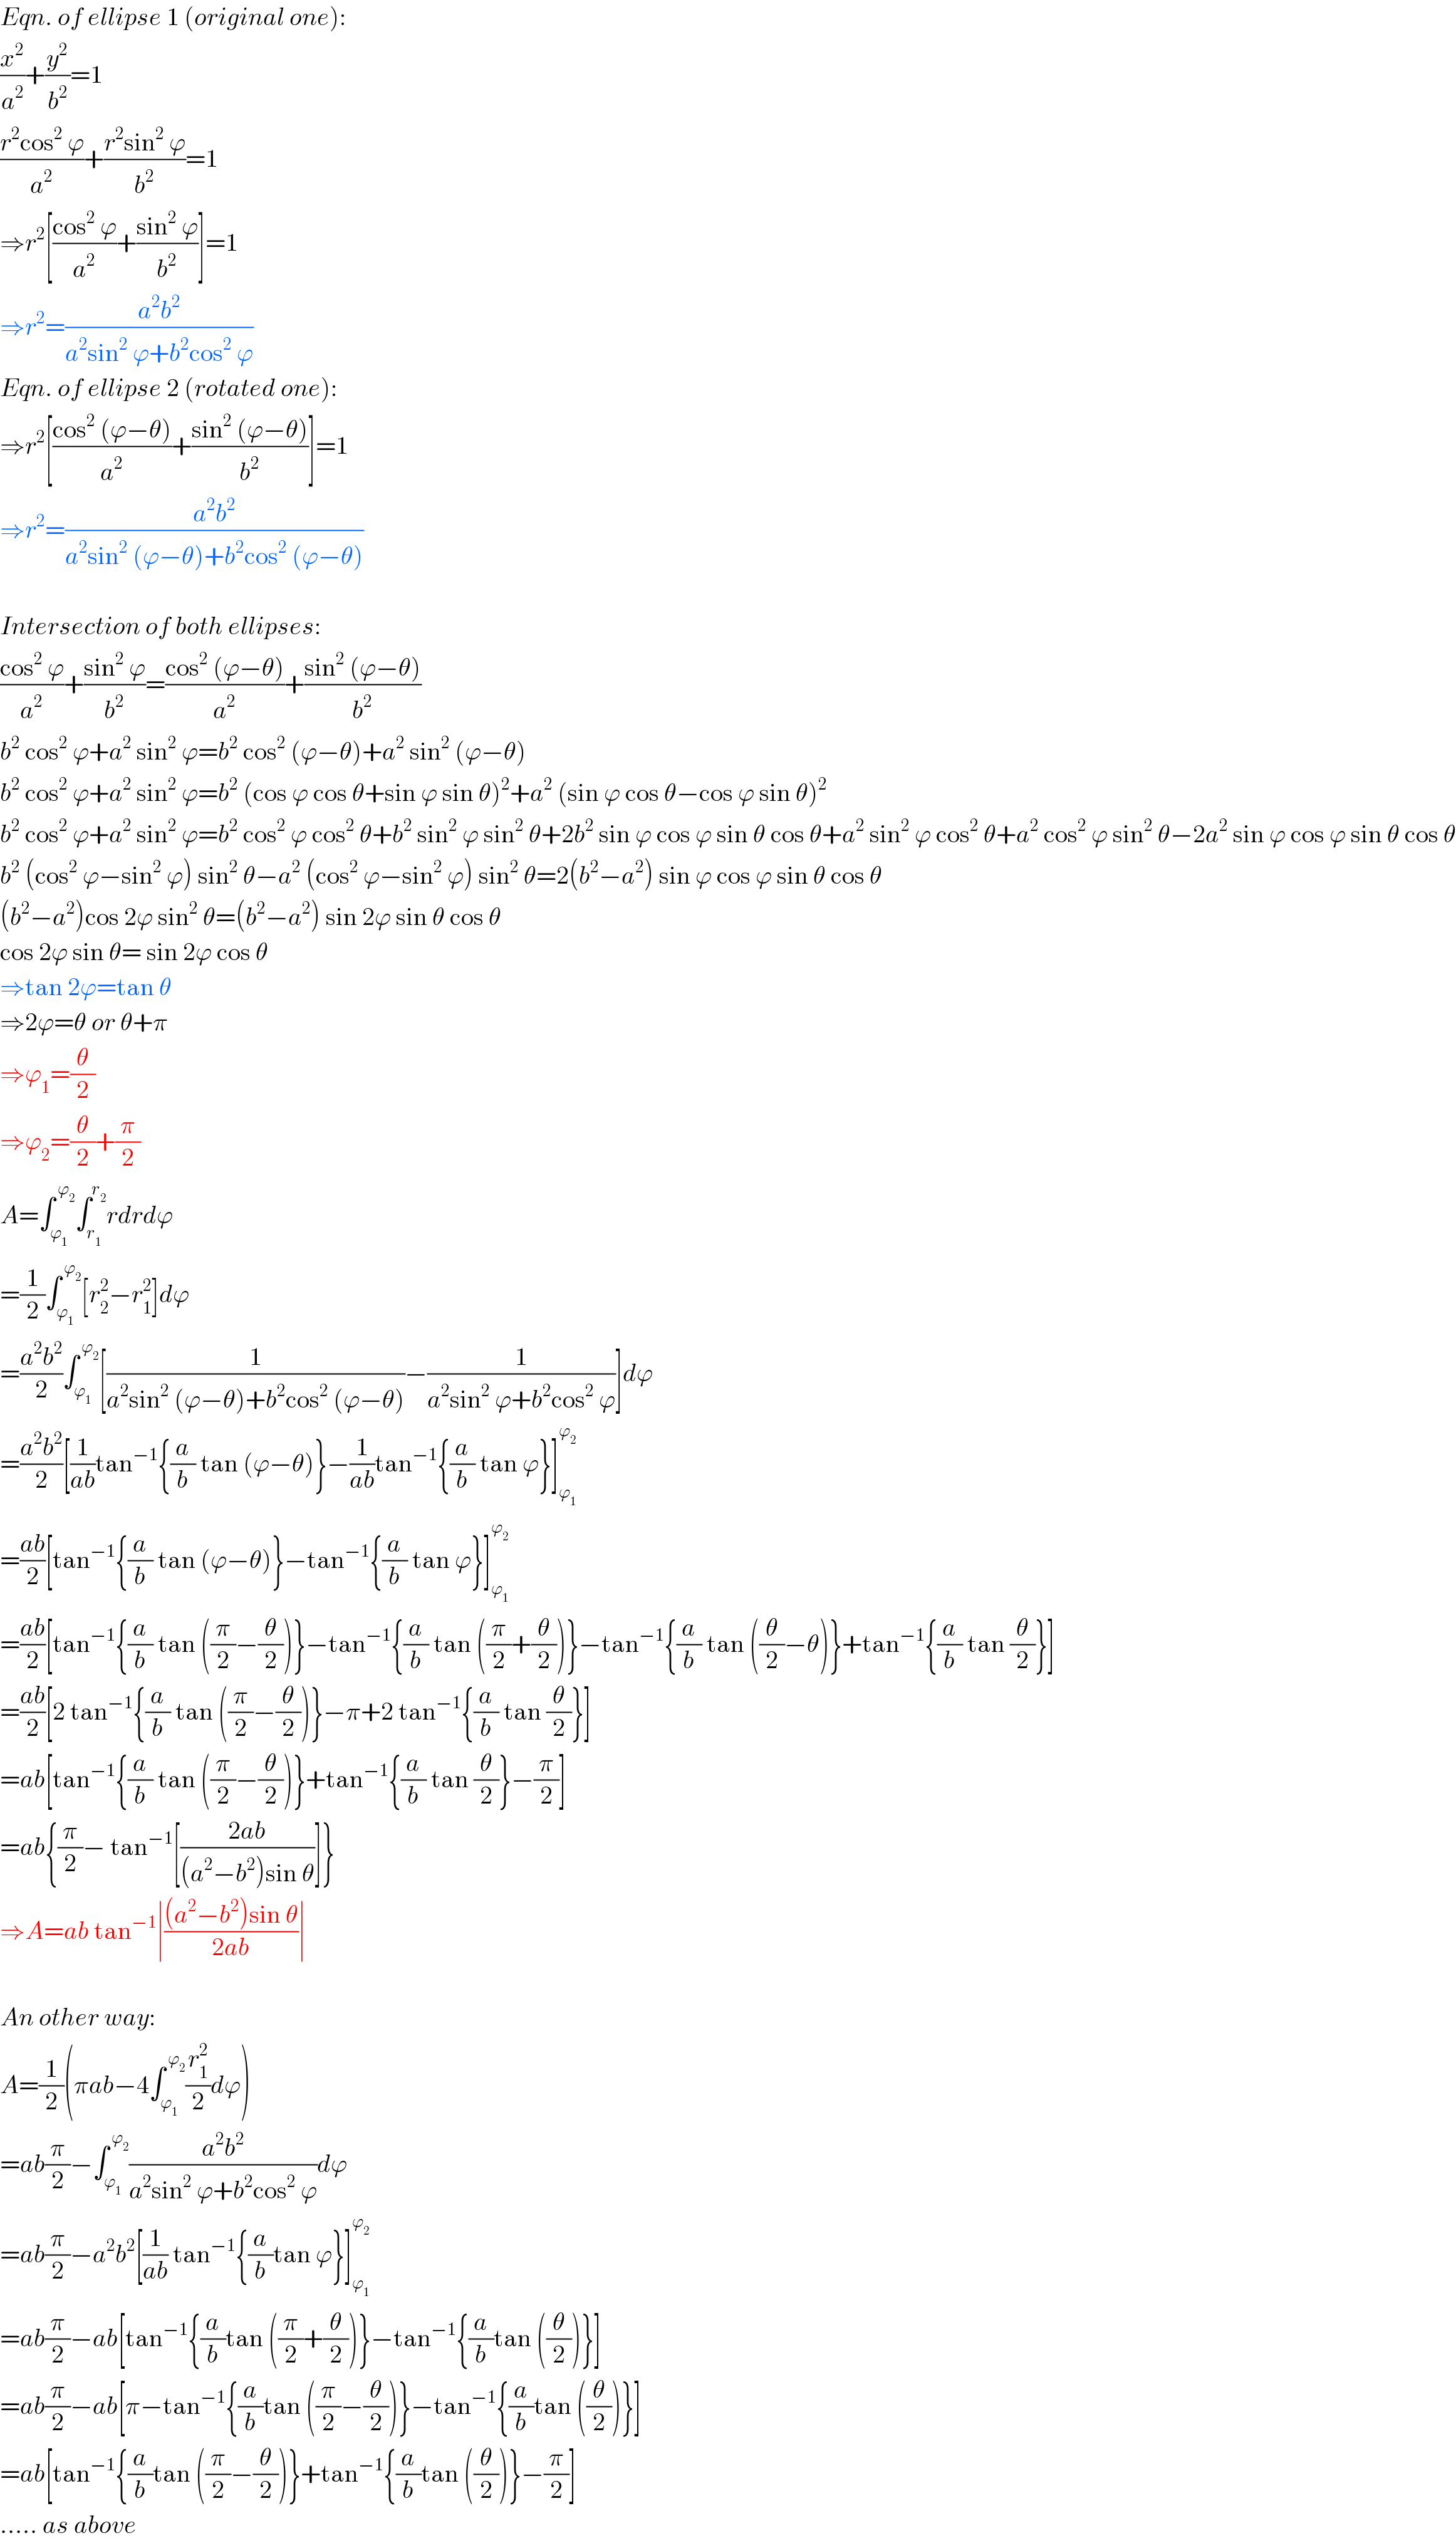 Eqn. of ellipse 1 (original one):  (x^2 /a^2 )+(y^2 /b^2 )=1  ((r^2 cos^2  ϕ)/a^2 )+((r^2 sin^2  ϕ)/b^2 )=1  ⇒r^2 [((cos^2  ϕ)/a^2 )+((sin^2  ϕ)/b^2 )]=1  ⇒r^2 =((a^2 b^2 )/(a^2 sin^2  ϕ+b^2 cos^2  ϕ))  Eqn. of ellipse 2 (rotated one):  ⇒r^2 [((cos^2  (ϕ−θ))/a^2 )+((sin^2  (ϕ−θ))/b^2 )]=1  ⇒r^2 =((a^2 b^2 )/(a^2 sin^2  (ϕ−θ)+b^2 cos^2  (ϕ−θ)))    Intersection of both ellipses:  ((cos^2  ϕ)/a^2 )+((sin^2  ϕ)/b^2 )=((cos^2  (ϕ−θ))/a^2 )+((sin^2  (ϕ−θ))/b^2 )  b^2  cos^2  ϕ+a^2  sin^2  ϕ=b^2  cos^2  (ϕ−θ)+a^2  sin^2  (ϕ−θ)  b^2  cos^2  ϕ+a^2  sin^2  ϕ=b^2  (cos ϕ cos θ+sin ϕ sin θ)^2 +a^2  (sin ϕ cos θ−cos ϕ sin θ)^2   b^2  cos^2  ϕ+a^2  sin^2  ϕ=b^2  cos^2  ϕ cos^2  θ+b^2  sin^2  ϕ sin^2  θ+2b^2  sin ϕ cos ϕ sin θ cos θ+a^2  sin^2  ϕ cos^2  θ+a^2  cos^2  ϕ sin^2  θ−2a^2  sin ϕ cos ϕ sin θ cos θ  b^2  (cos^2  ϕ−sin^2  ϕ) sin^2  θ−a^2  (cos^2  ϕ−sin^2  ϕ) sin^2  θ=2(b^2 −a^2 ) sin ϕ cos ϕ sin θ cos θ  (b^2 −a^2 )cos 2ϕ sin^2  θ=(b^2 −a^2 ) sin 2ϕ sin θ cos θ  cos 2ϕ sin θ= sin 2ϕ cos θ  ⇒tan 2ϕ=tan θ  ⇒2ϕ=θ or θ+π  ⇒ϕ_1 =(θ/2)  ⇒ϕ_2 =(θ/2)+(π/2)  A=∫_ϕ_1  ^( ϕ_2 ) ∫_r_1  ^r_2  rdrdϕ  =(1/2)∫_ϕ_1  ^( ϕ_2 ) [r_2 ^2 −r_1 ^2 ]dϕ  =((a^2 b^2 )/2)∫_ϕ_1  ^( ϕ_2 ) [(1/(a^2 sin^2  (ϕ−θ)+b^2 cos^2  (ϕ−θ)))−(1/(a^2 sin^2  ϕ+b^2 cos^2  ϕ))]dϕ  =((a^2 b^2 )/2)[(1/(ab))tan^(−1) {(a/b) tan (ϕ−θ)}−(1/(ab))tan^(−1) {(a/b) tan ϕ}]_ϕ_1  ^ϕ_2    =((ab)/2)[tan^(−1) {(a/b) tan (ϕ−θ)}−tan^(−1) {(a/b) tan ϕ}]_ϕ_1  ^ϕ_2    =((ab)/2)[tan^(−1) {(a/b) tan ((π/2)−(θ/2))}−tan^(−1) {(a/b) tan ((π/2)+(θ/2))}−tan^(−1) {(a/b) tan ((θ/2)−θ)}+tan^(−1) {(a/b) tan (θ/2)}]  =((ab)/2)[2 tan^(−1) {(a/b) tan ((π/2)−(θ/2))}−π+2 tan^(−1) {(a/b) tan (θ/2)}]  =ab[tan^(−1) {(a/b) tan ((π/2)−(θ/2))}+tan^(−1) {(a/b) tan (θ/2)}−(π/2)]  =ab{(π/2)− tan^(−1) [((2ab)/((a^2 −b^2 )sin θ))]}  ⇒A=ab tan^(−1) ∣(((a^2 −b^2 )sin θ)/(2ab))∣    An other way:  A=(1/2)(πab−4∫_ϕ_1  ^( ϕ_2 ) (r_1 ^2 /2)dϕ)  =ab(π/2)−∫_ϕ_1  ^( ϕ_2 ) ((a^2 b^2 )/(a^2 sin^2  ϕ+b^2 cos^2  ϕ))dϕ  =ab(π/2)−a^2 b^2 [(1/(ab)) tan^(−1) {(a/b)tan ϕ}]_ϕ_1  ^ϕ_2    =ab(π/2)−ab[tan^(−1) {(a/b)tan ((π/2)+(θ/2))}−tan^(−1) {(a/b)tan ((θ/2))}]  =ab(π/2)−ab[π−tan^(−1) {(a/b)tan ((π/2)−(θ/2))}−tan^(−1) {(a/b)tan ((θ/2))}]  =ab[tan^(−1) {(a/b)tan ((π/2)−(θ/2))}+tan^(−1) {(a/b)tan ((θ/2))}−(π/2)]  ..... as above  